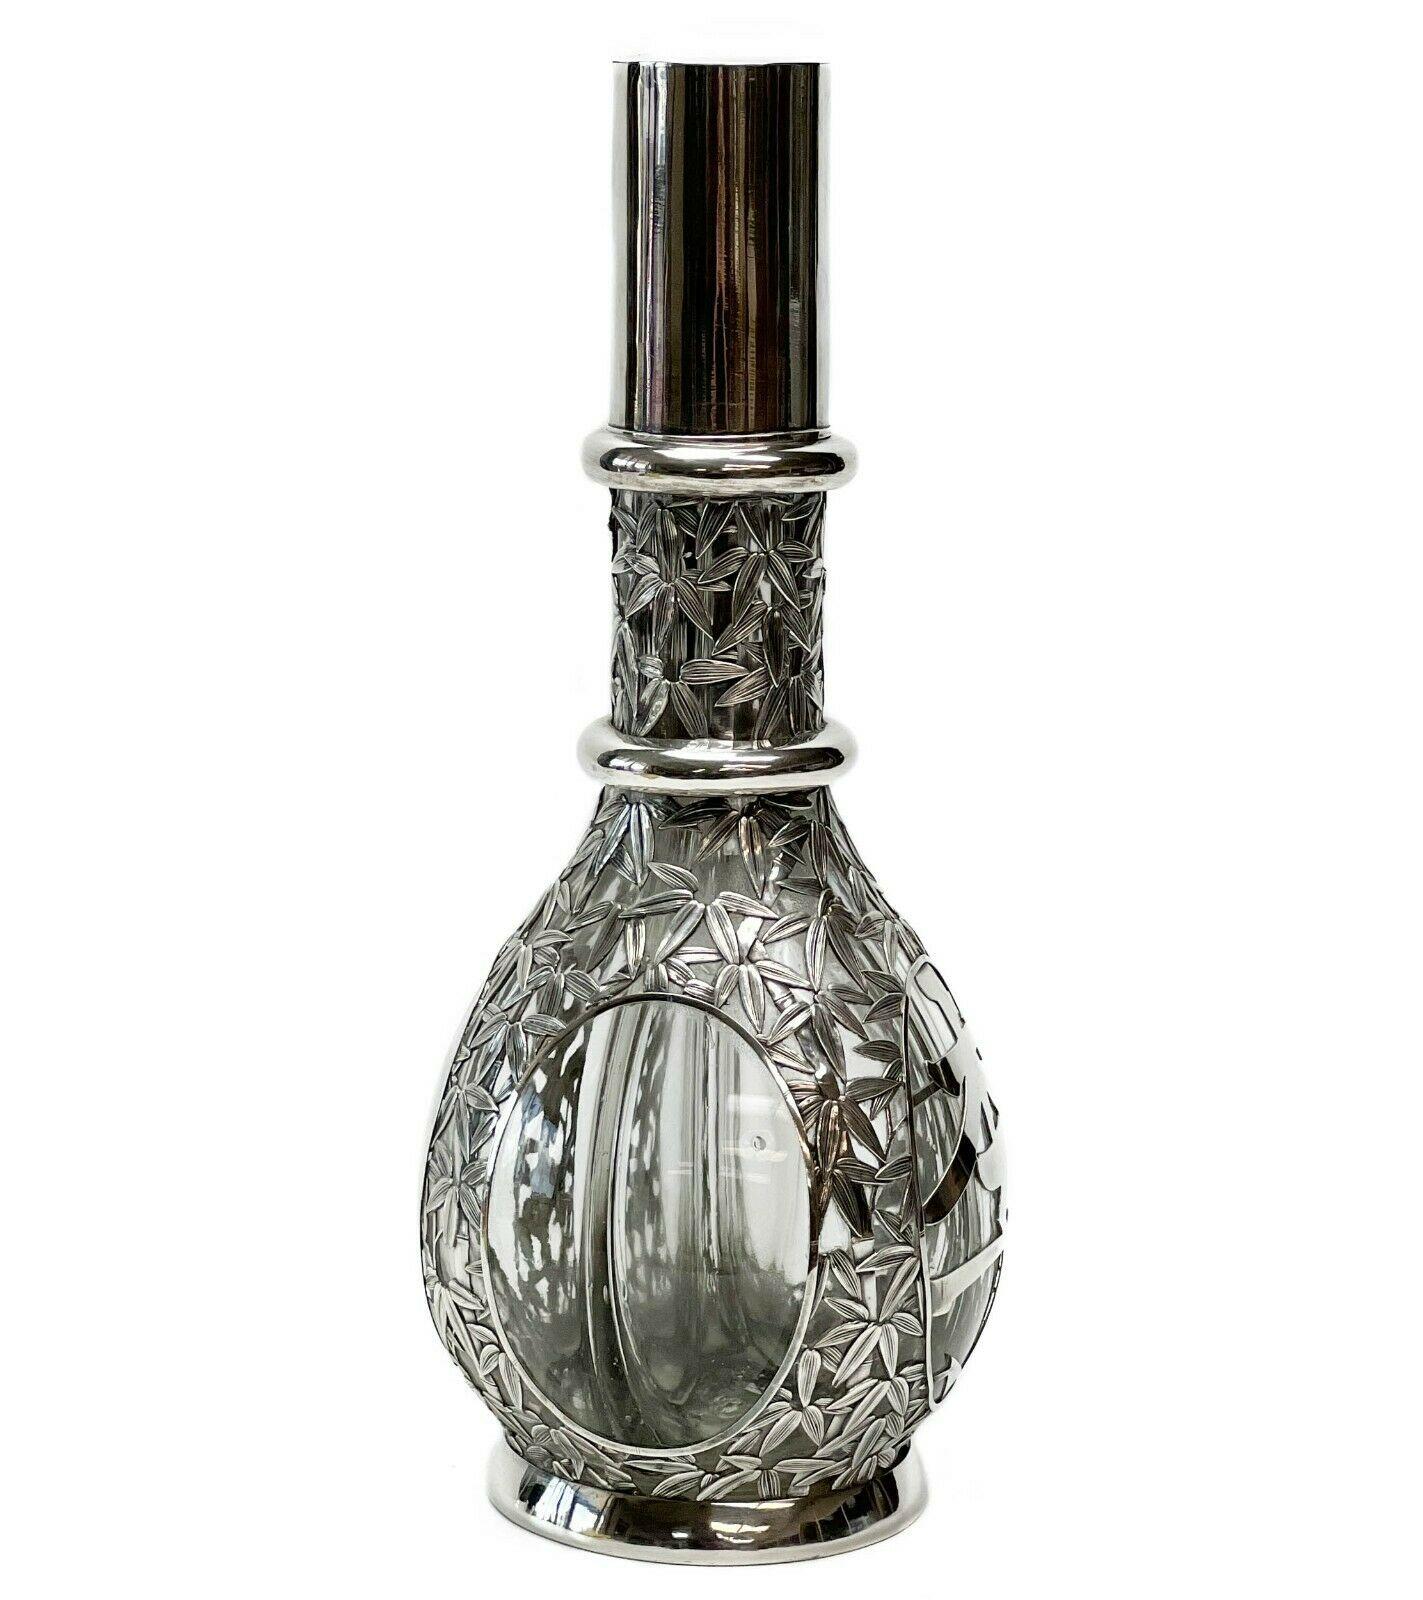 Japanische 950 Silber überlagert Glas 4 Kammern Dekanter Bambus-Design

Dekanter, aufgeteilt in 4 Kammern, jede mit einem silbernen Korken versehen. Silbernes Bambusmuster auf der Außenseite mit vier runden Paneelen, ein Paneel mit einem